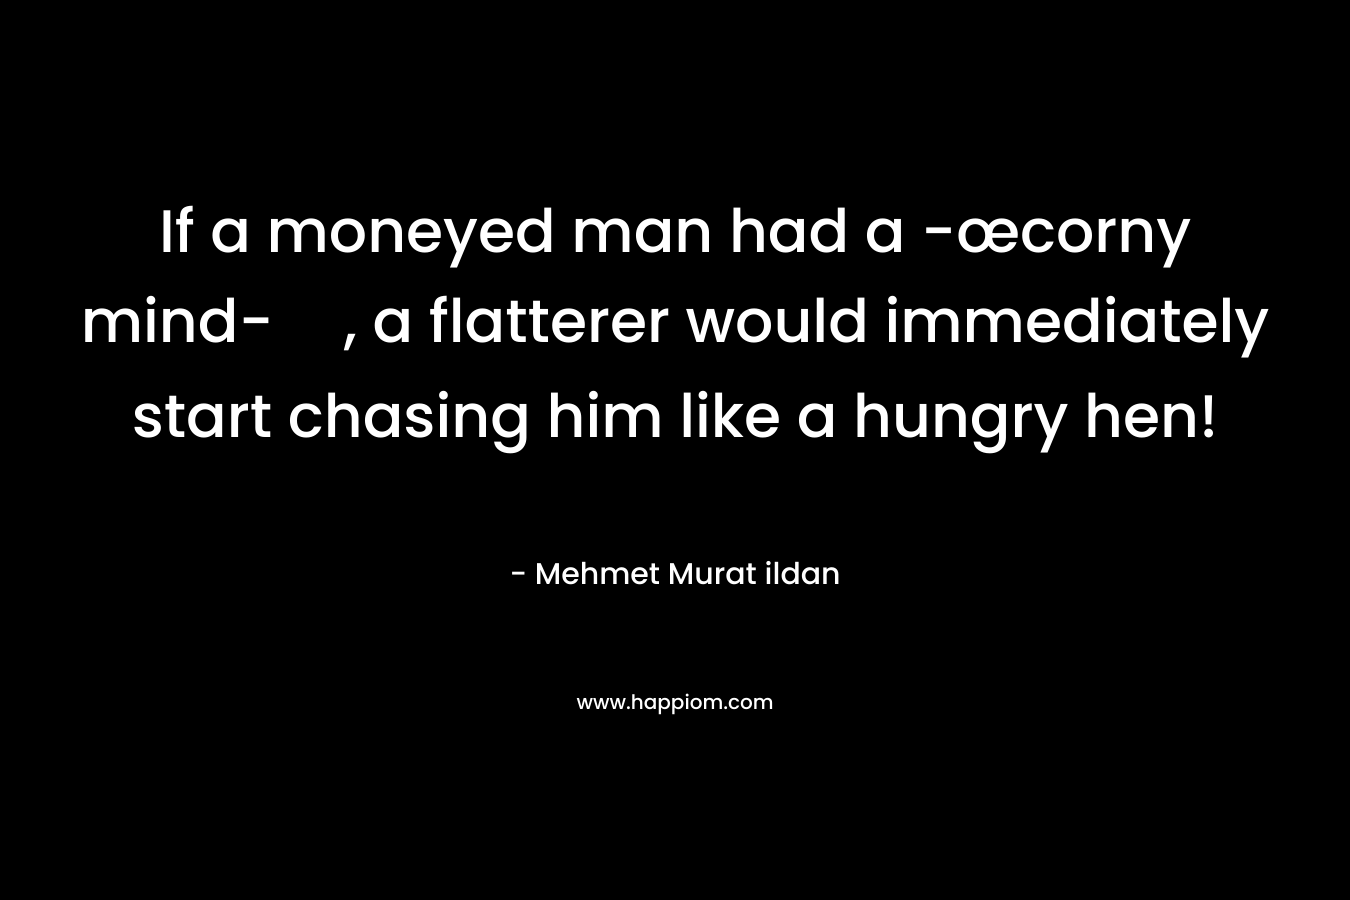 If a moneyed man had a -œcorny mind-, a flatterer would immediately start chasing him like a hungry hen! – Mehmet Murat ildan